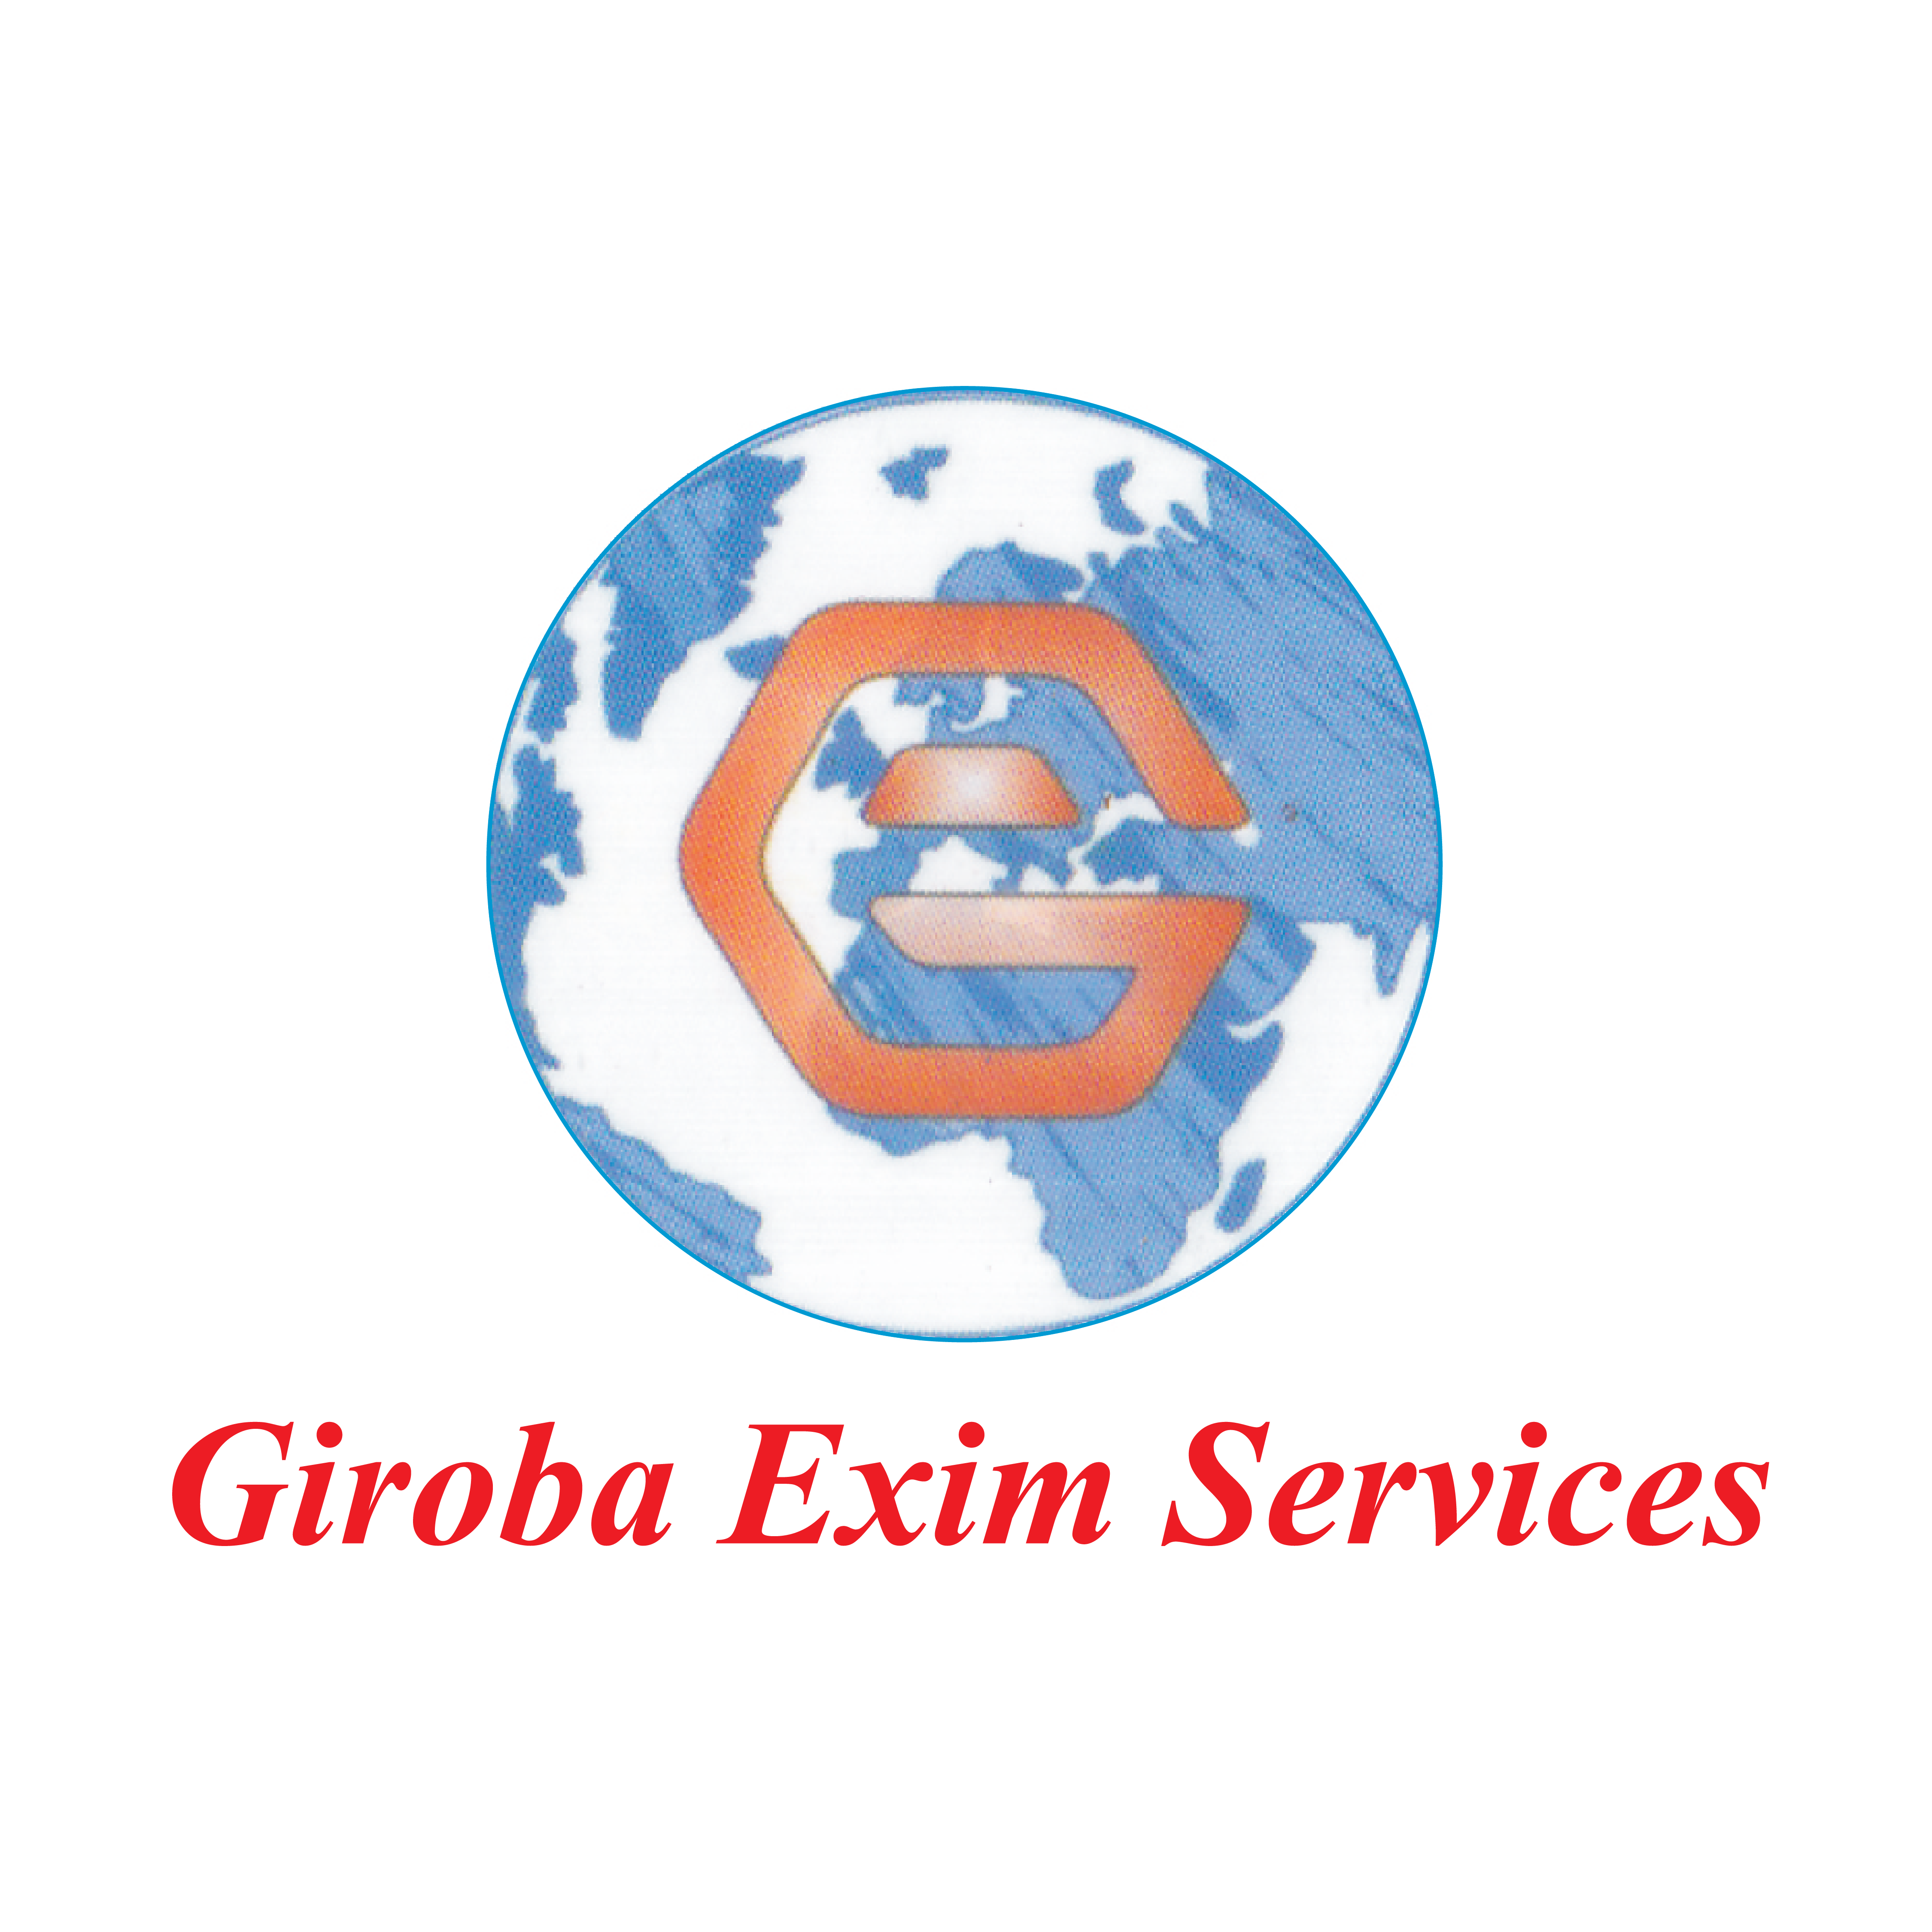 GIROBA EXIM SERVICES